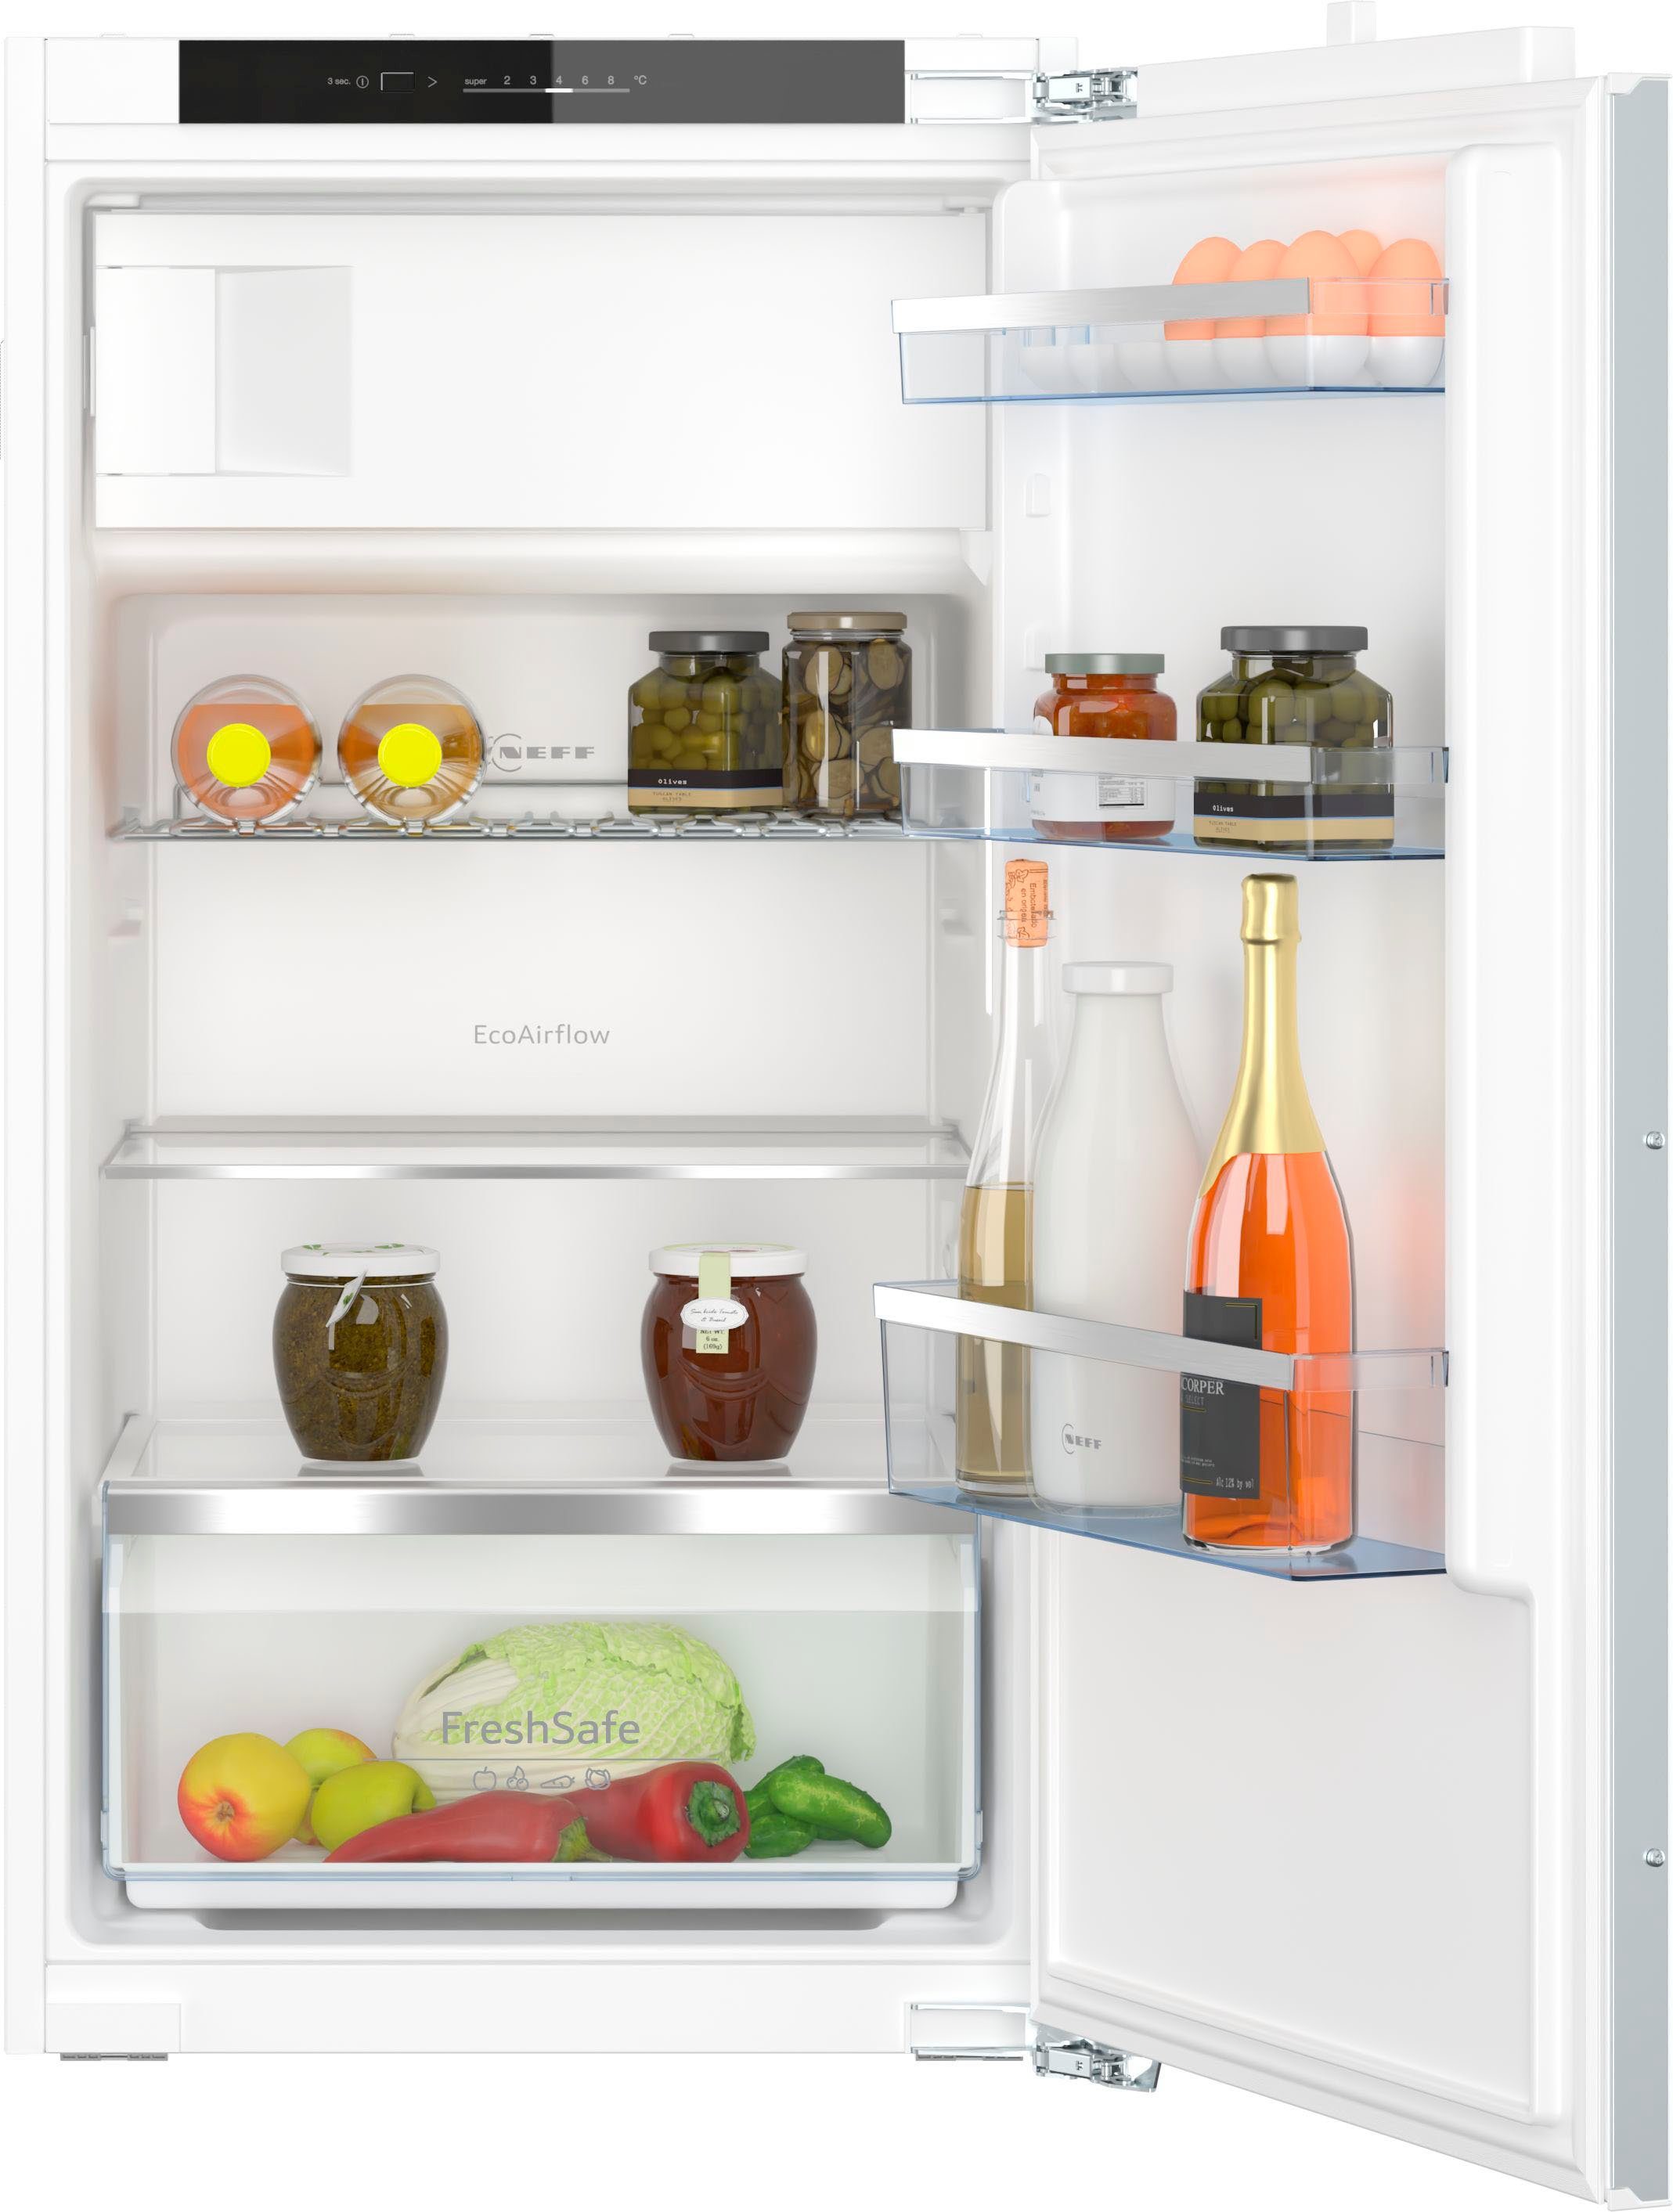 NEFF Einbaukühlschrank KI2322FE0, 102,1 cm hoch, 56 cm breit, Fresh Safe –  Schublade für flexible Lagermöglichkeiten von Obst und Gemüse